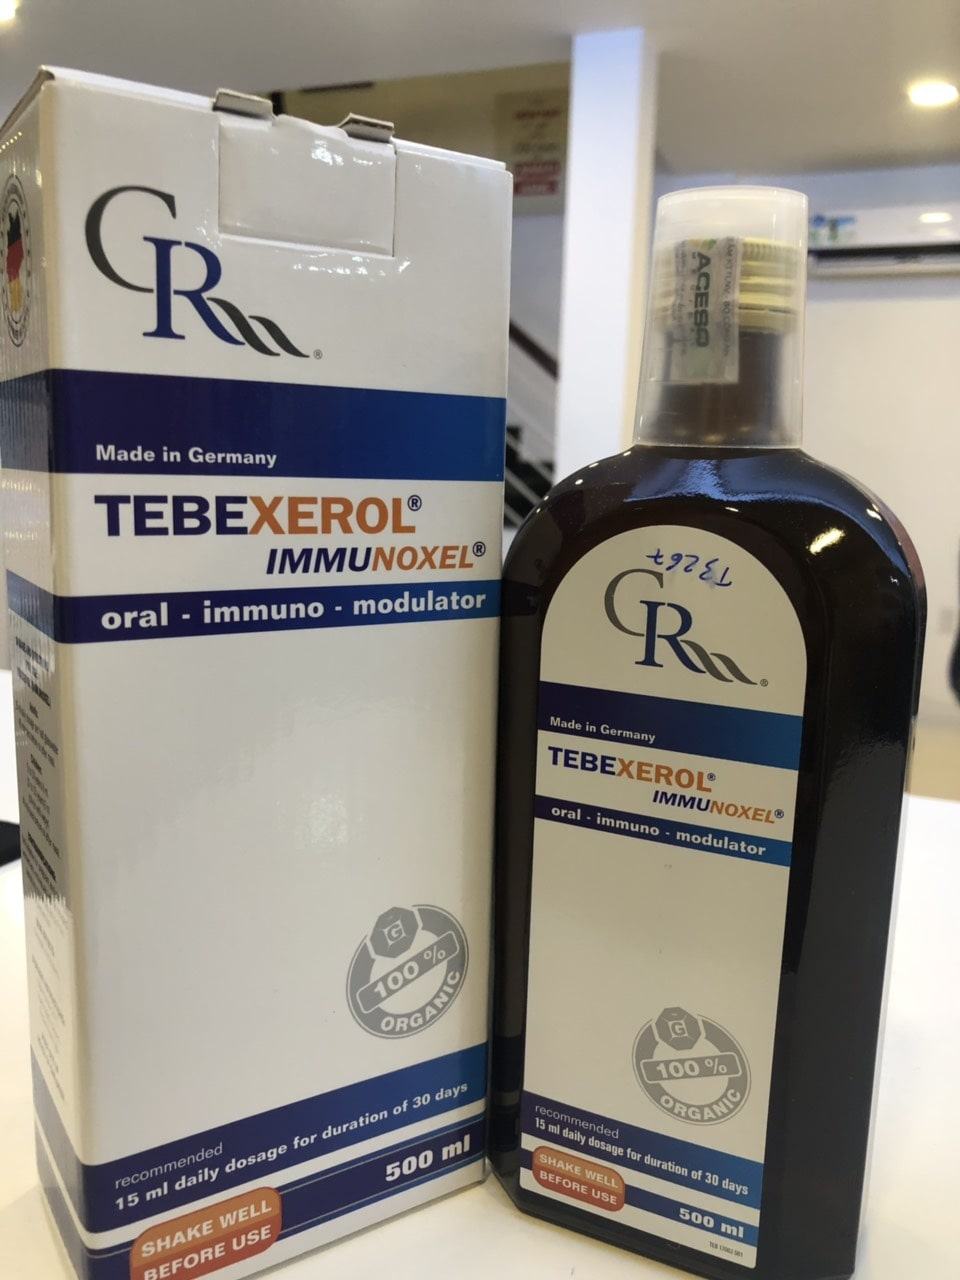 Tebexerol Immunoxel 500 ml – Tăng cường miễn dịch cho cơ thể